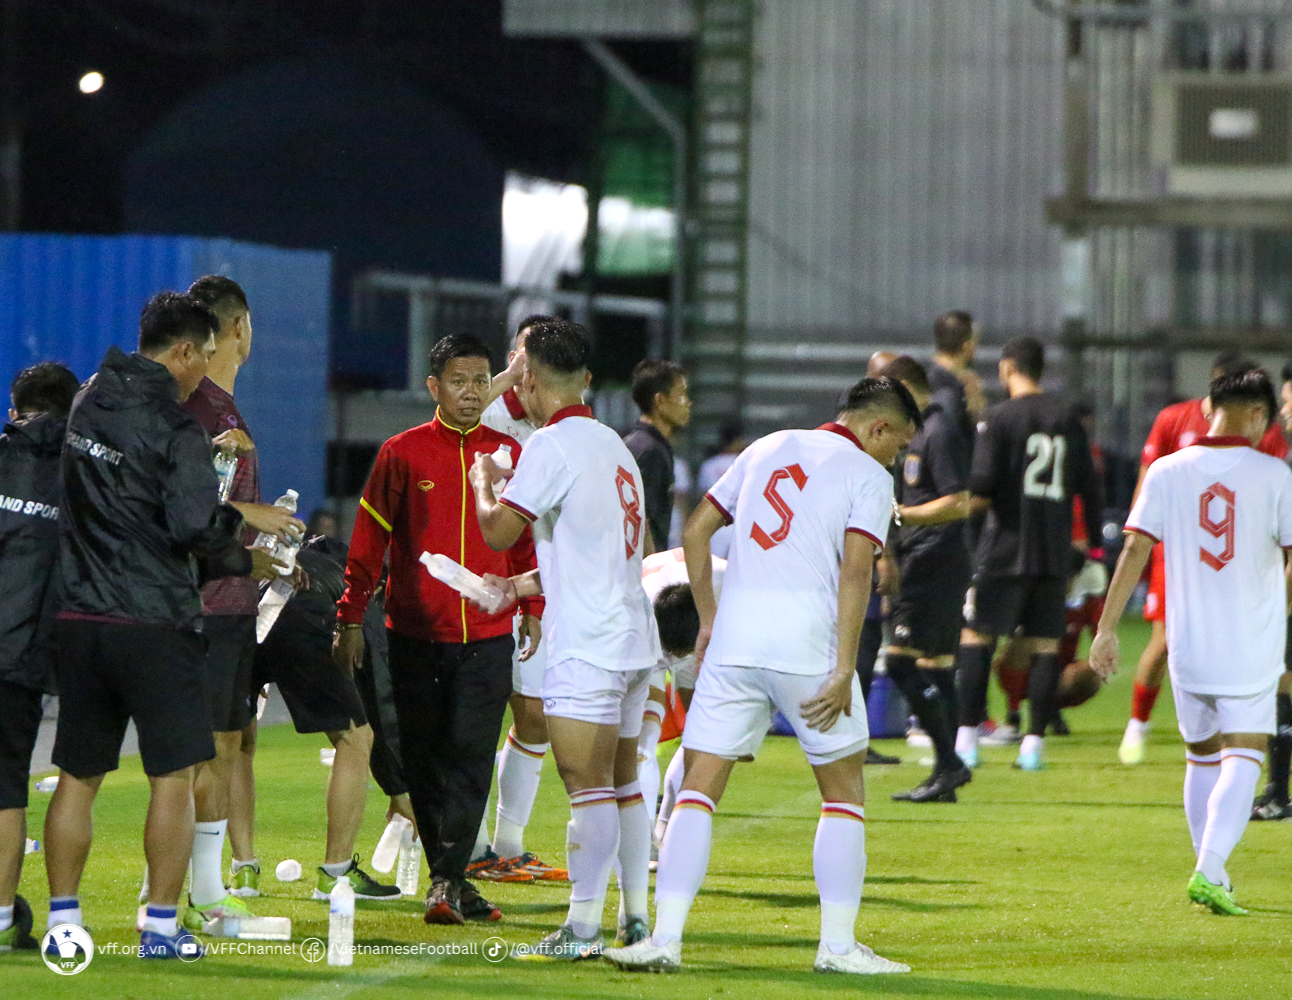 HLV Hoàng Anh Tuấn giúp đội tuyển U.23 Việt Nam chơi ngang ngửa U.23 Bahrain